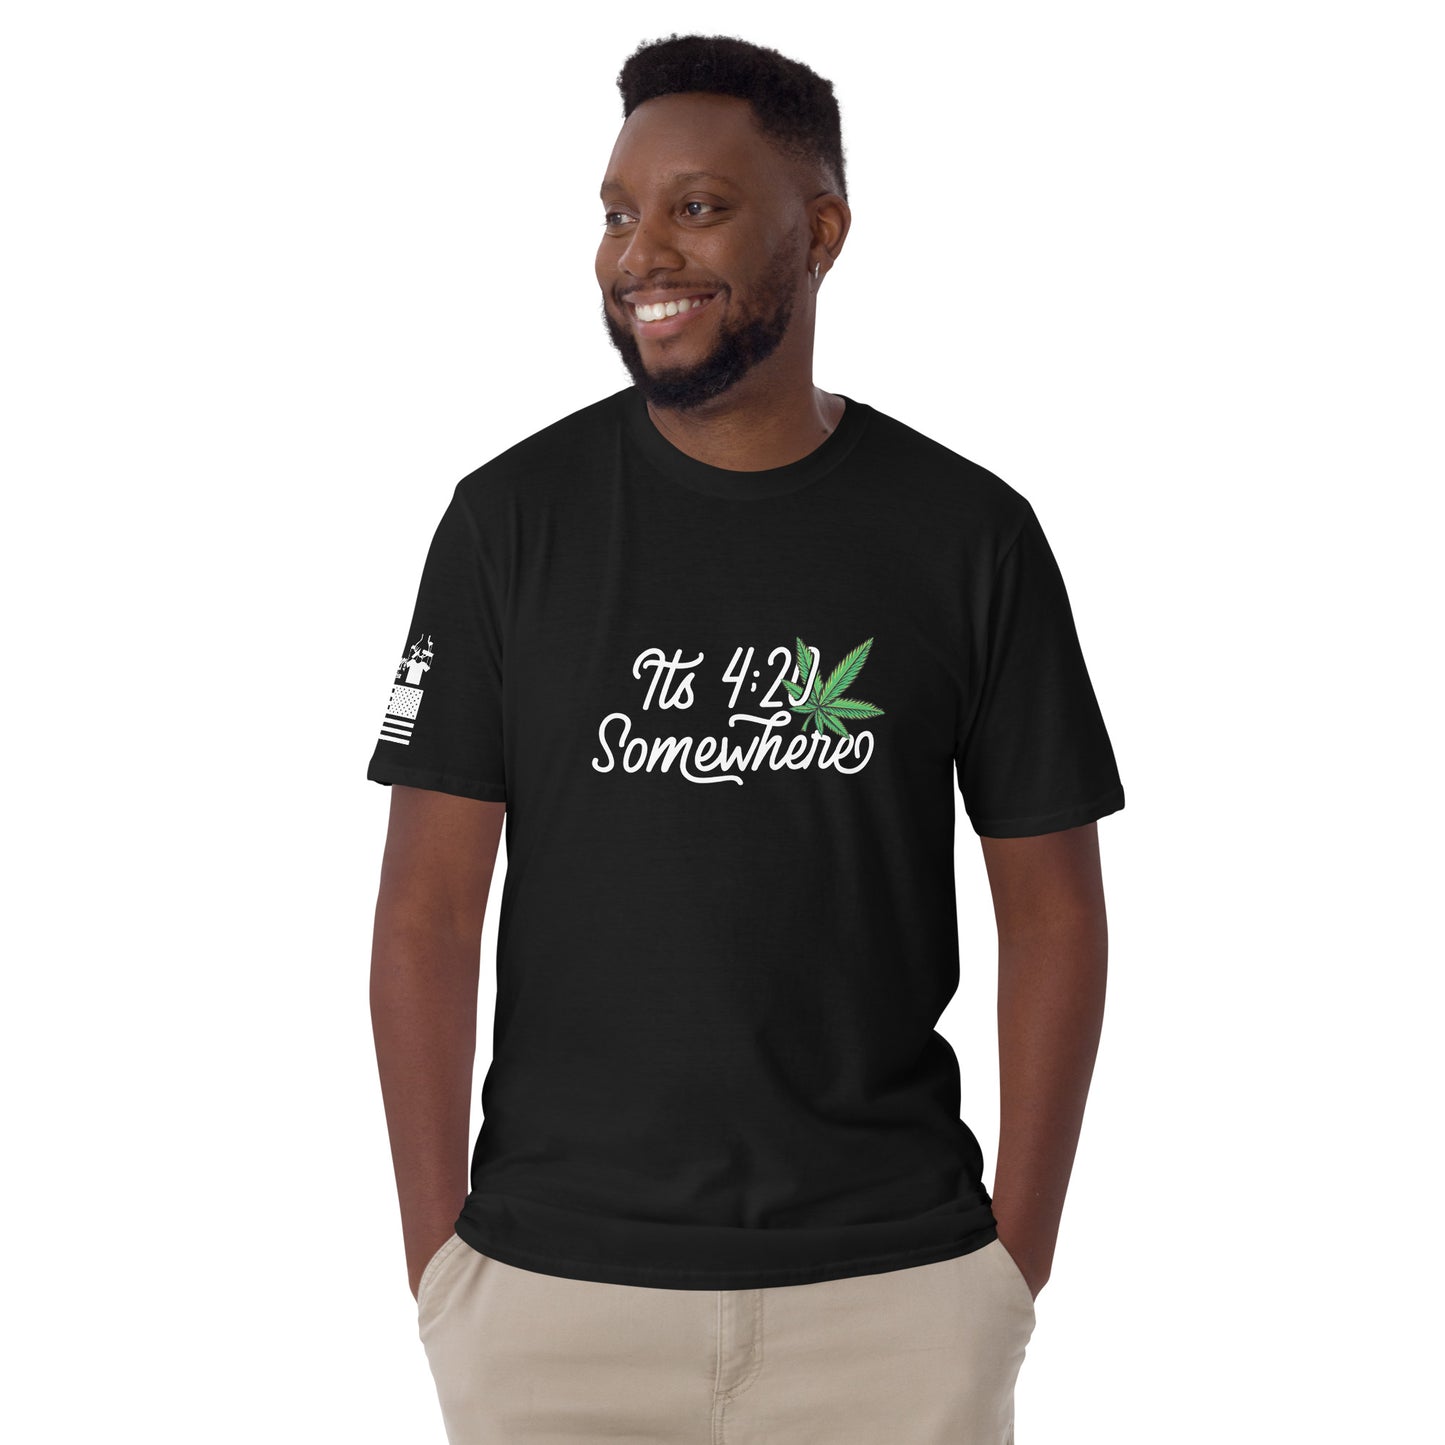 It's 420 somewhere - Basic T-Shirt (unisex) | TheShirtfather